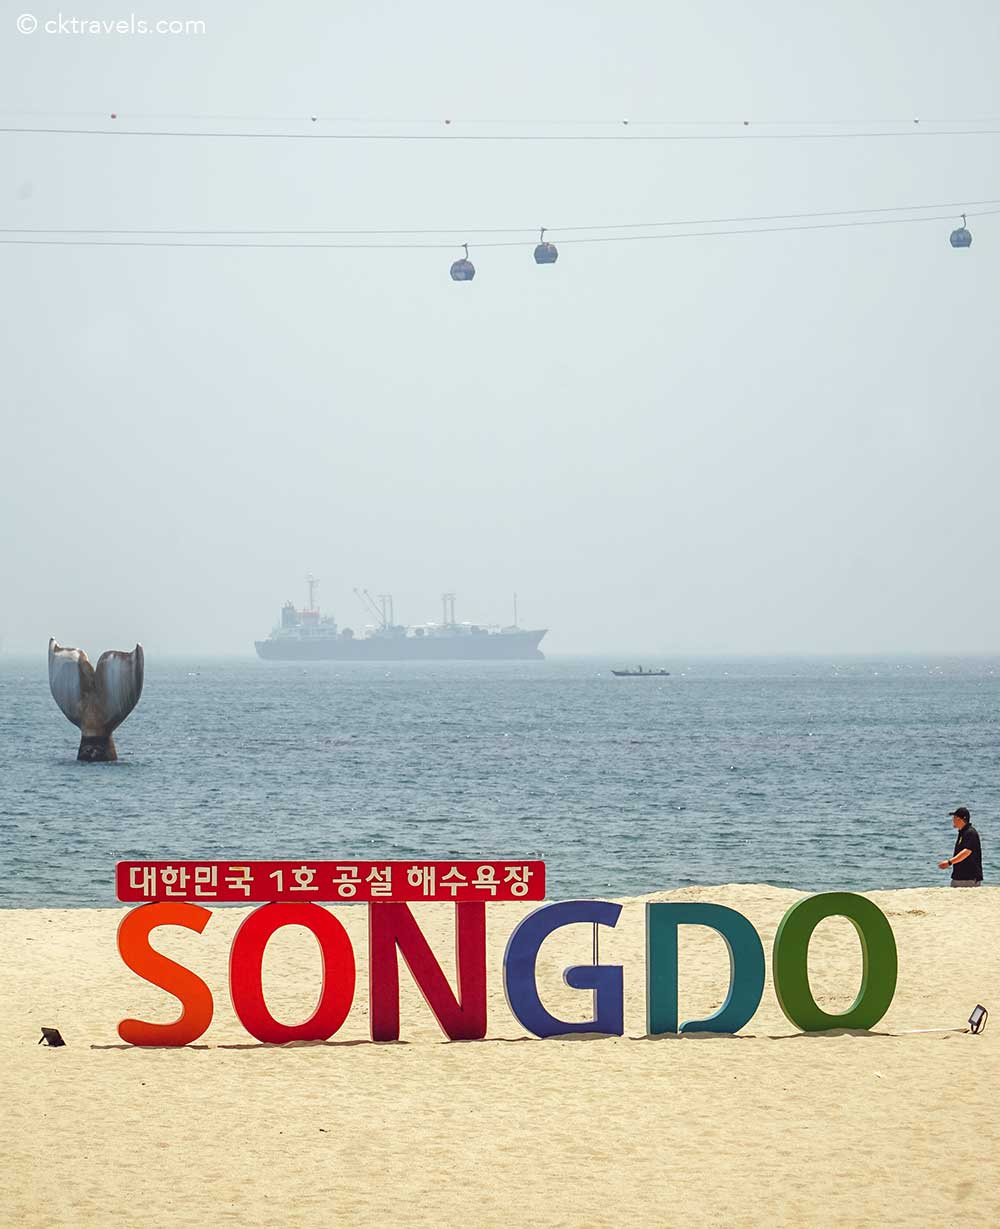 Songdo Beach sign in Busan South Korea